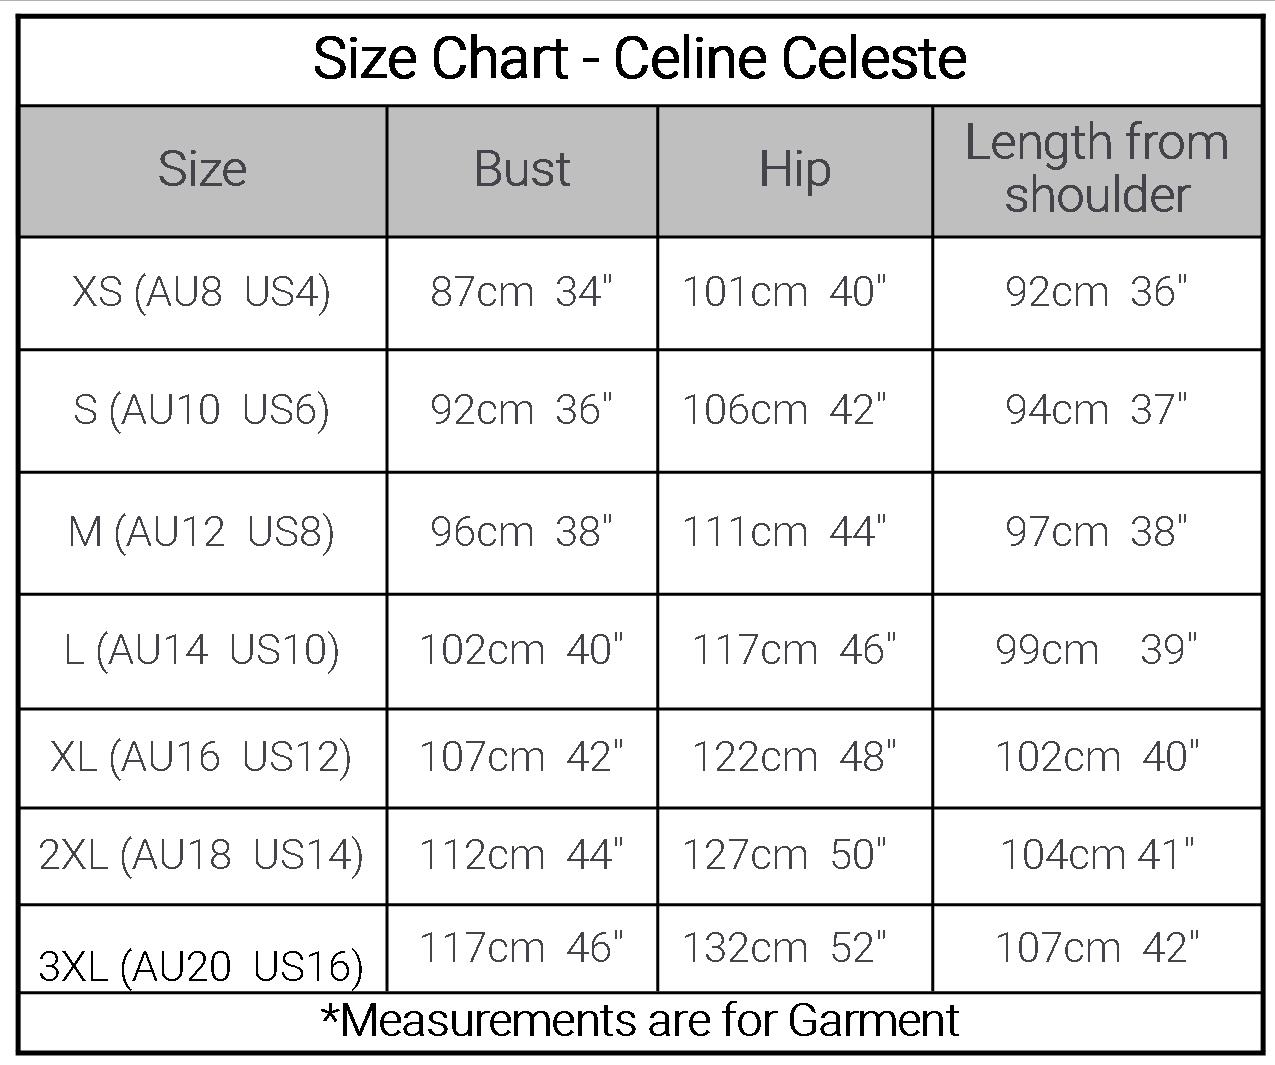 Celine Celeste Cotton Nightie Size